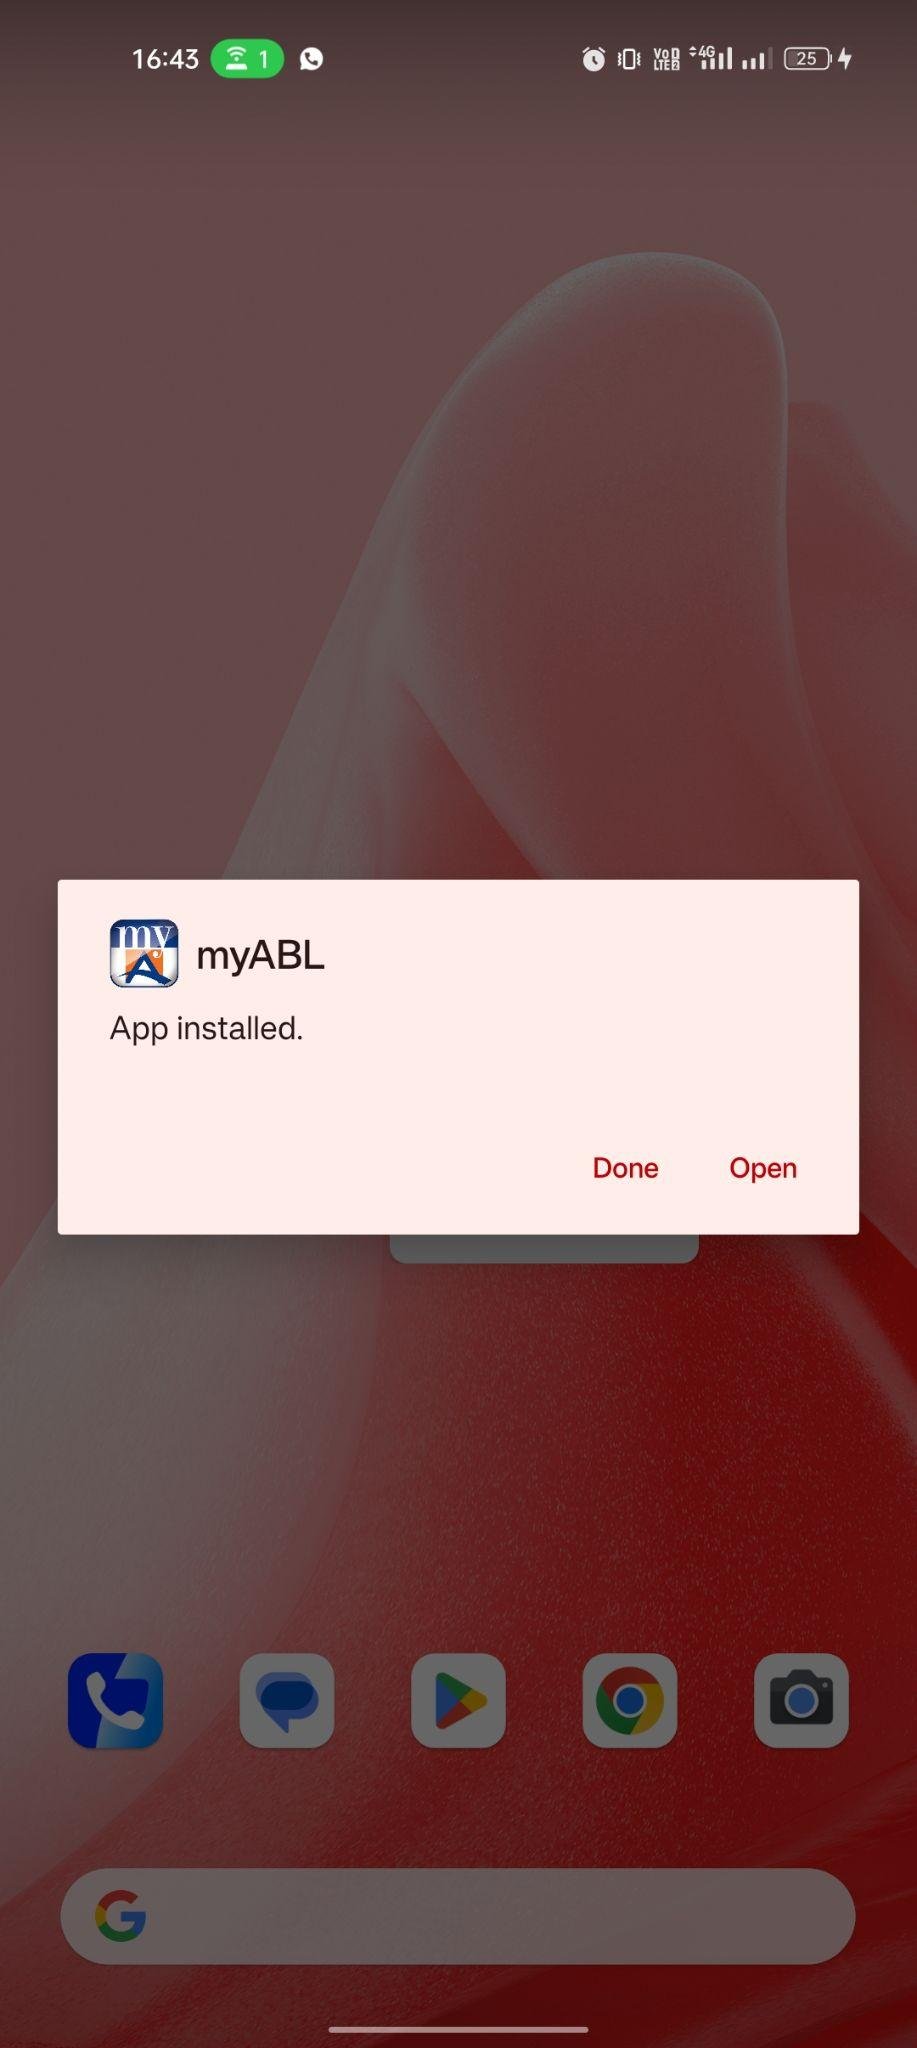 myABL APK apk installed